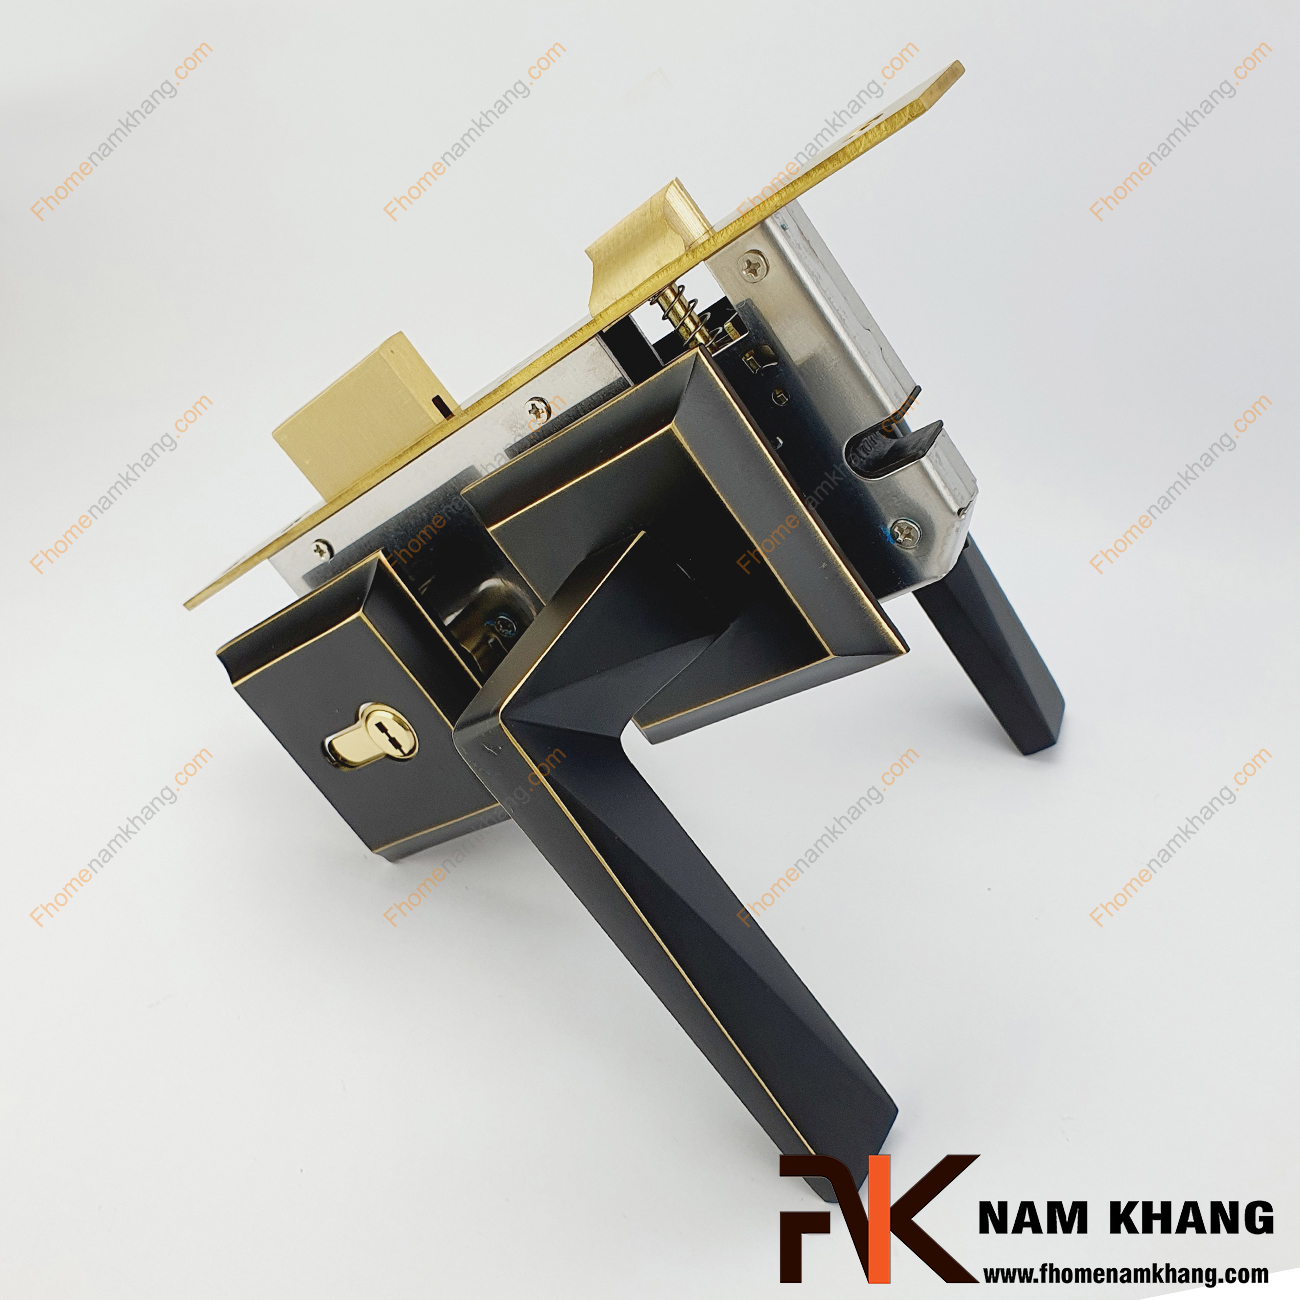 Khóa cửa phân thể dạng ốp vuông màu đen viền vàng NK555-BCF có thiết kế phần ốp khóa và tay gạt riêng biệt, khá nhỏ gọn và tạo được sự nổi bật độc đáo.